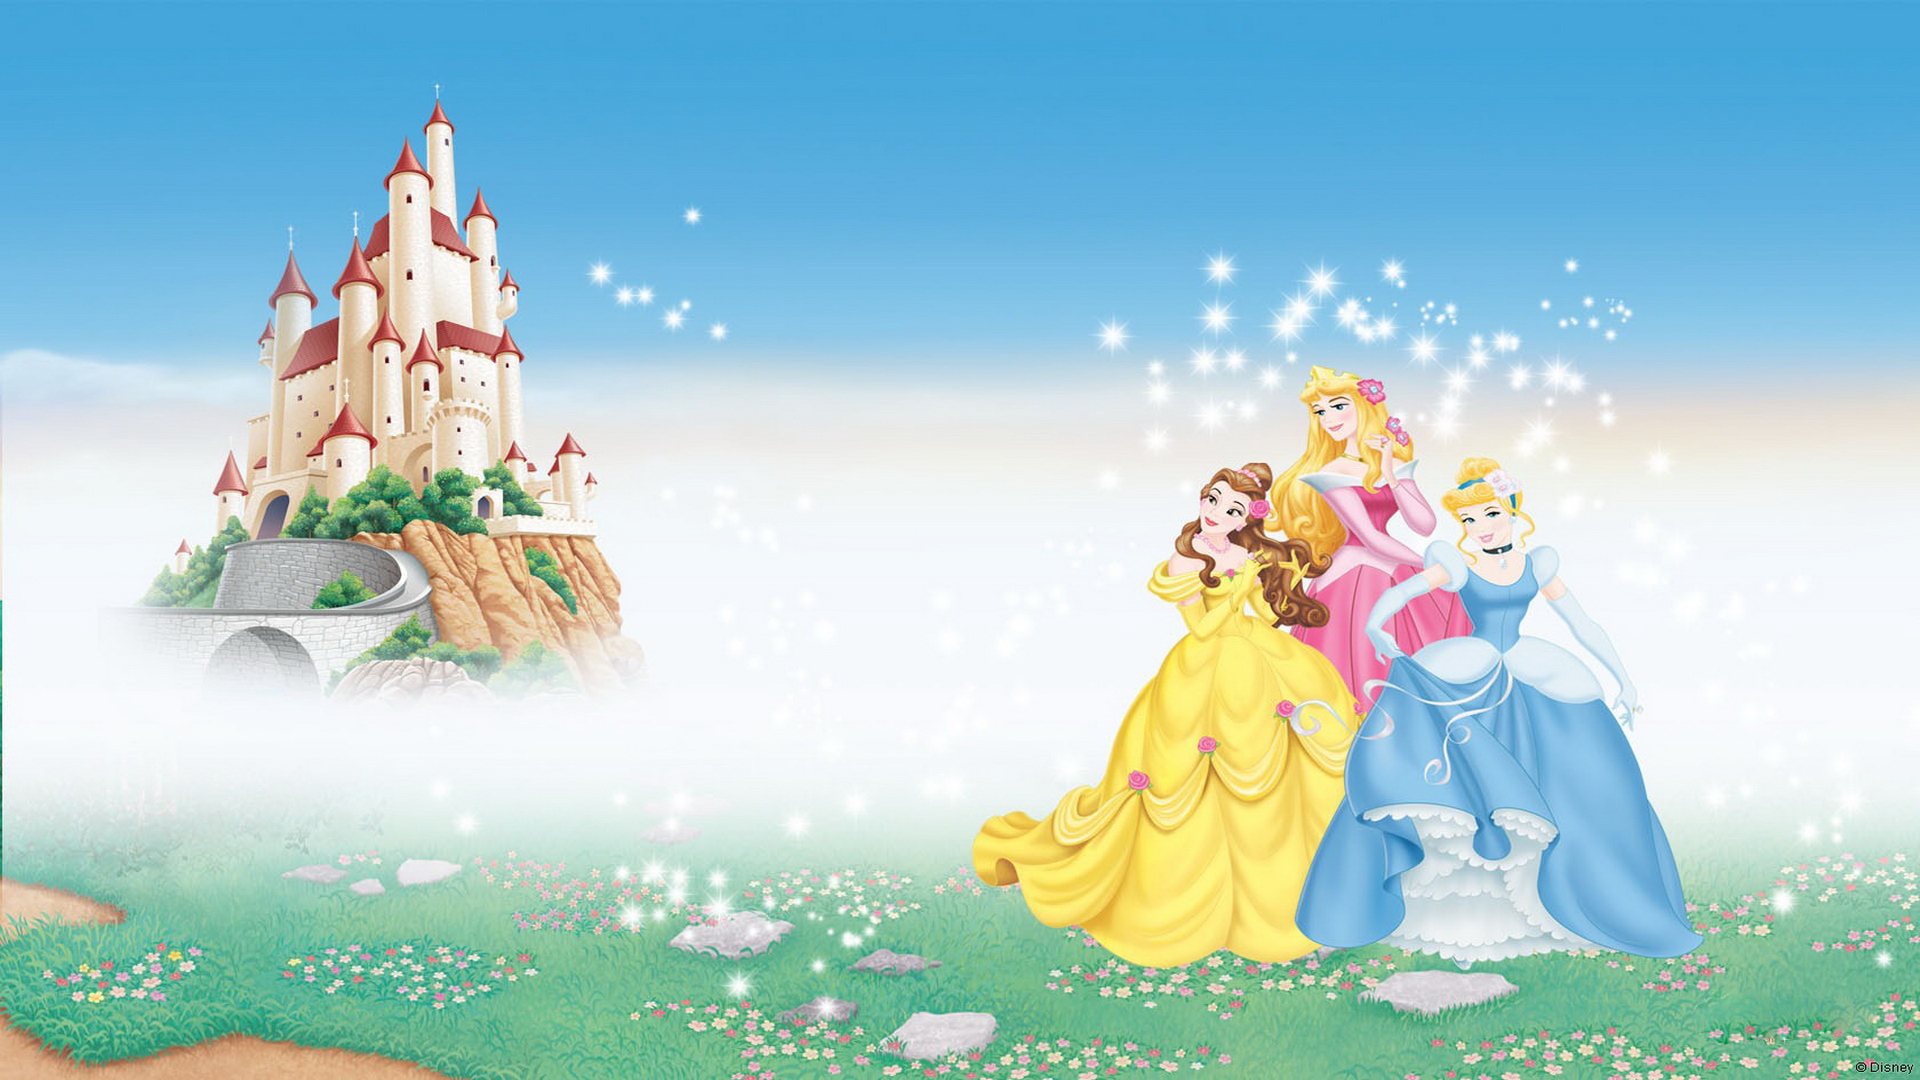 Awesome Disney Princess Hd Wallpaper Free Download - Disney Princess  Background Design - 1920x1080 Wallpaper 